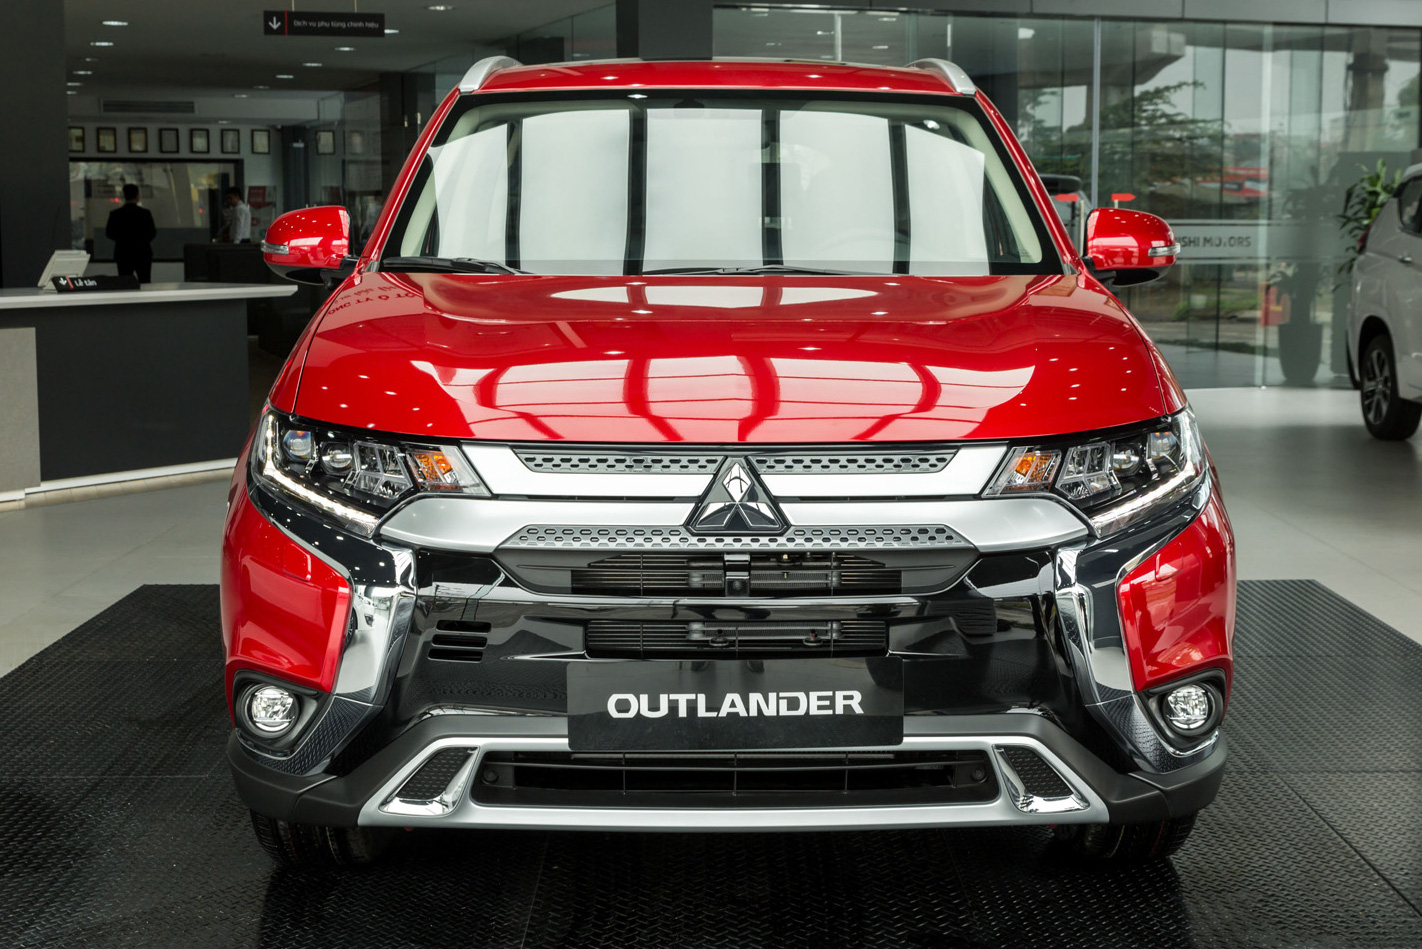 Ra mắt Mitsubishi Outlander 2020 'full option' tại Việt Nam: Giá gần 1,06 tỷ đồng, phả hơi nóng lên Honda CR-V